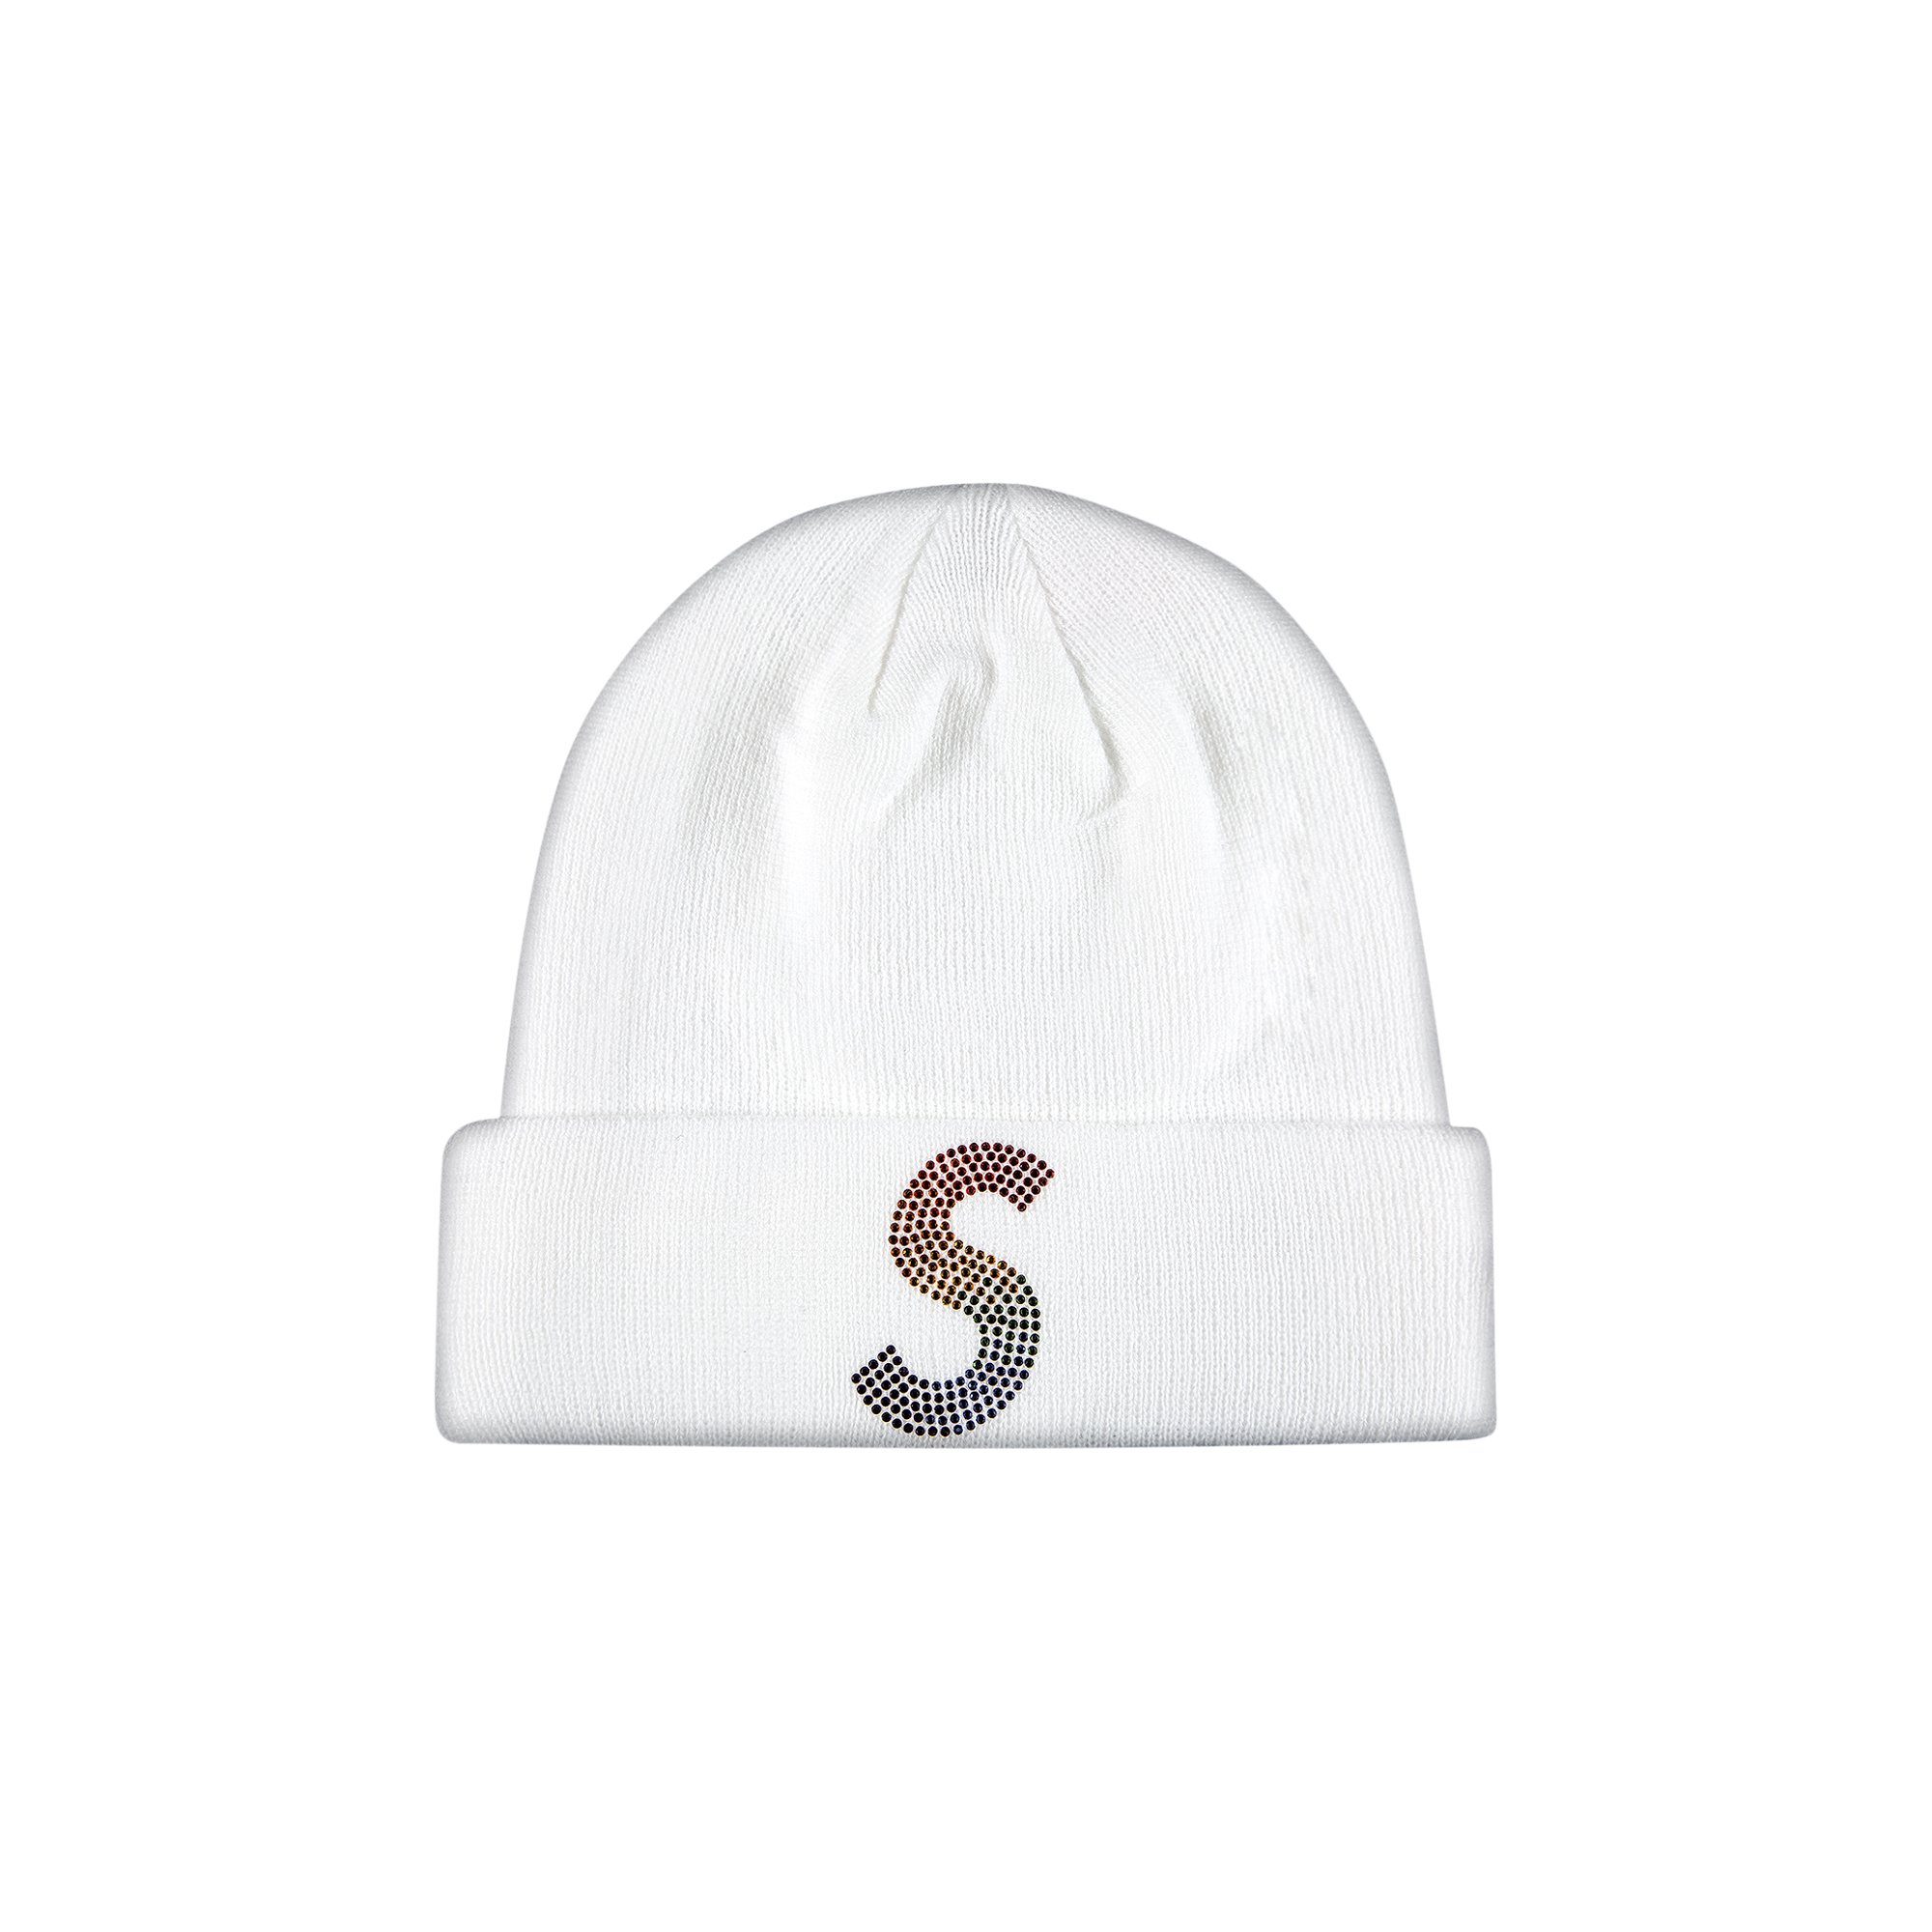 Supreme x New Era x Swarovski S Logo Beanie 'White'